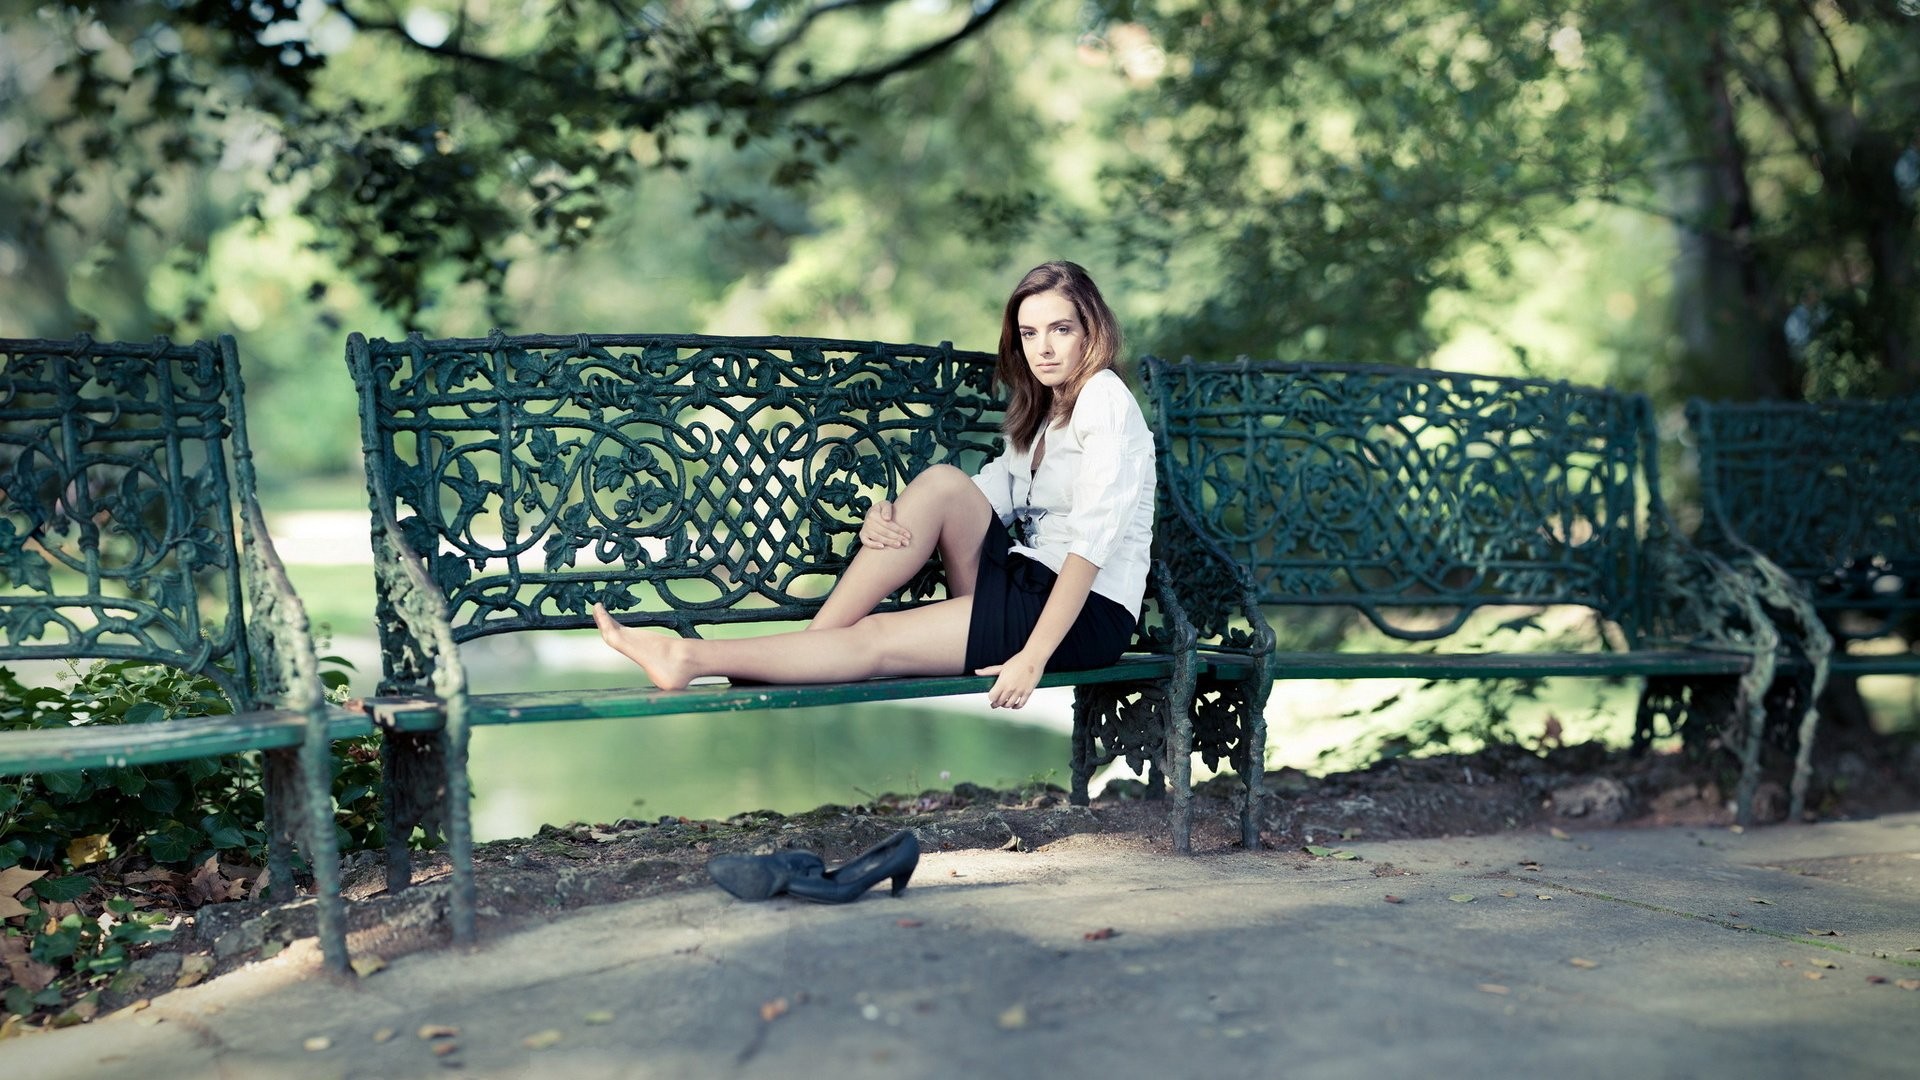 women model brunette long hair women outdoors sitting barefoot blouses bench park trees Wallpaper